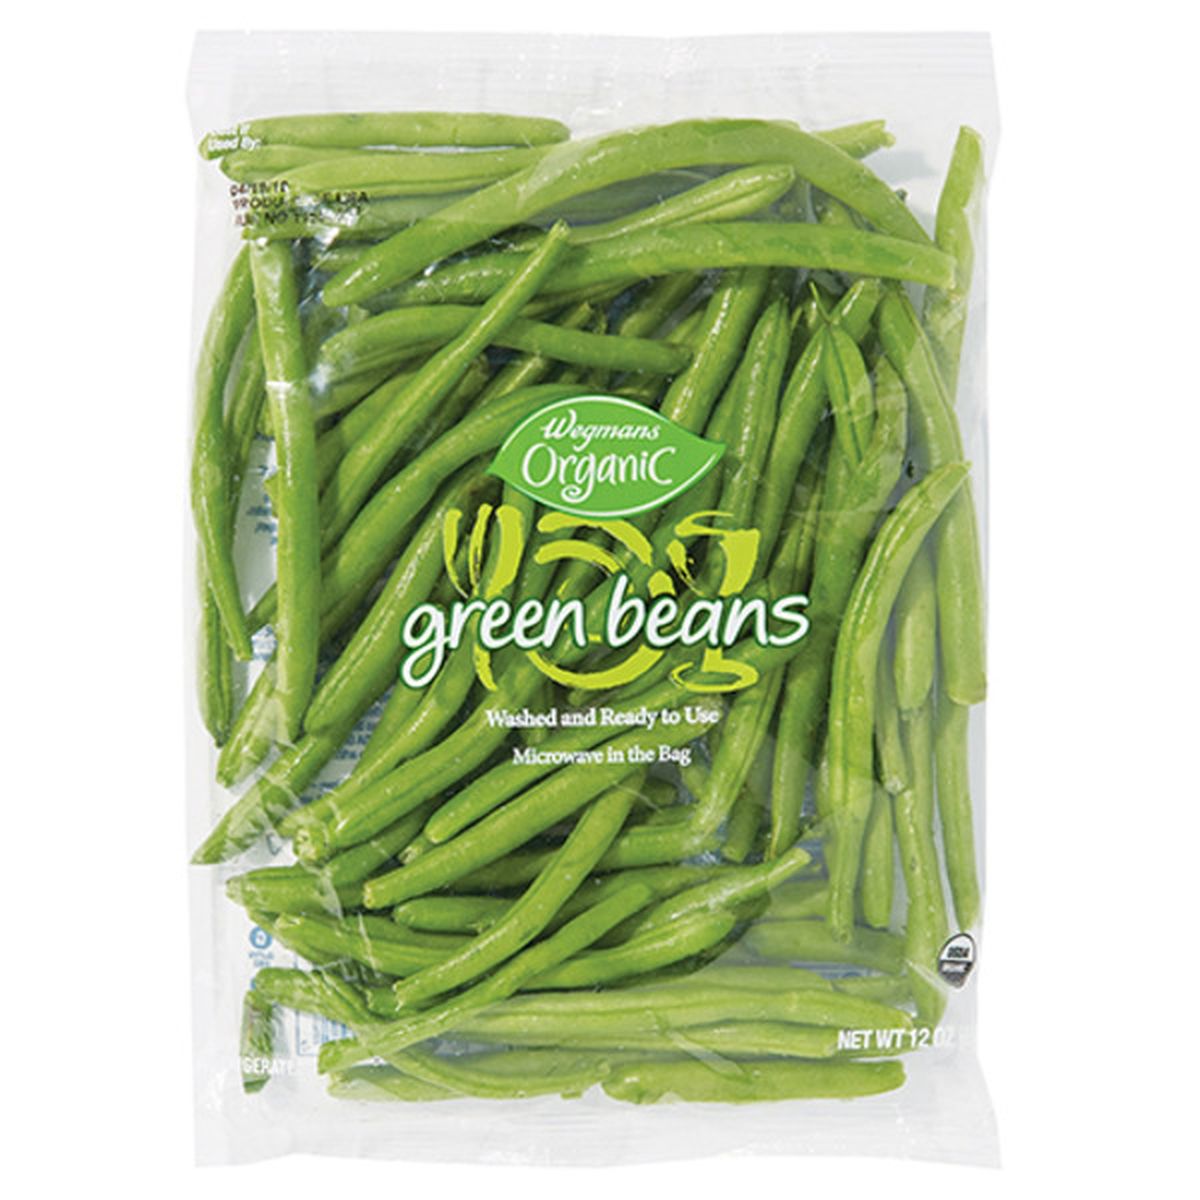 Calories in Wegmans Organic Green Beans